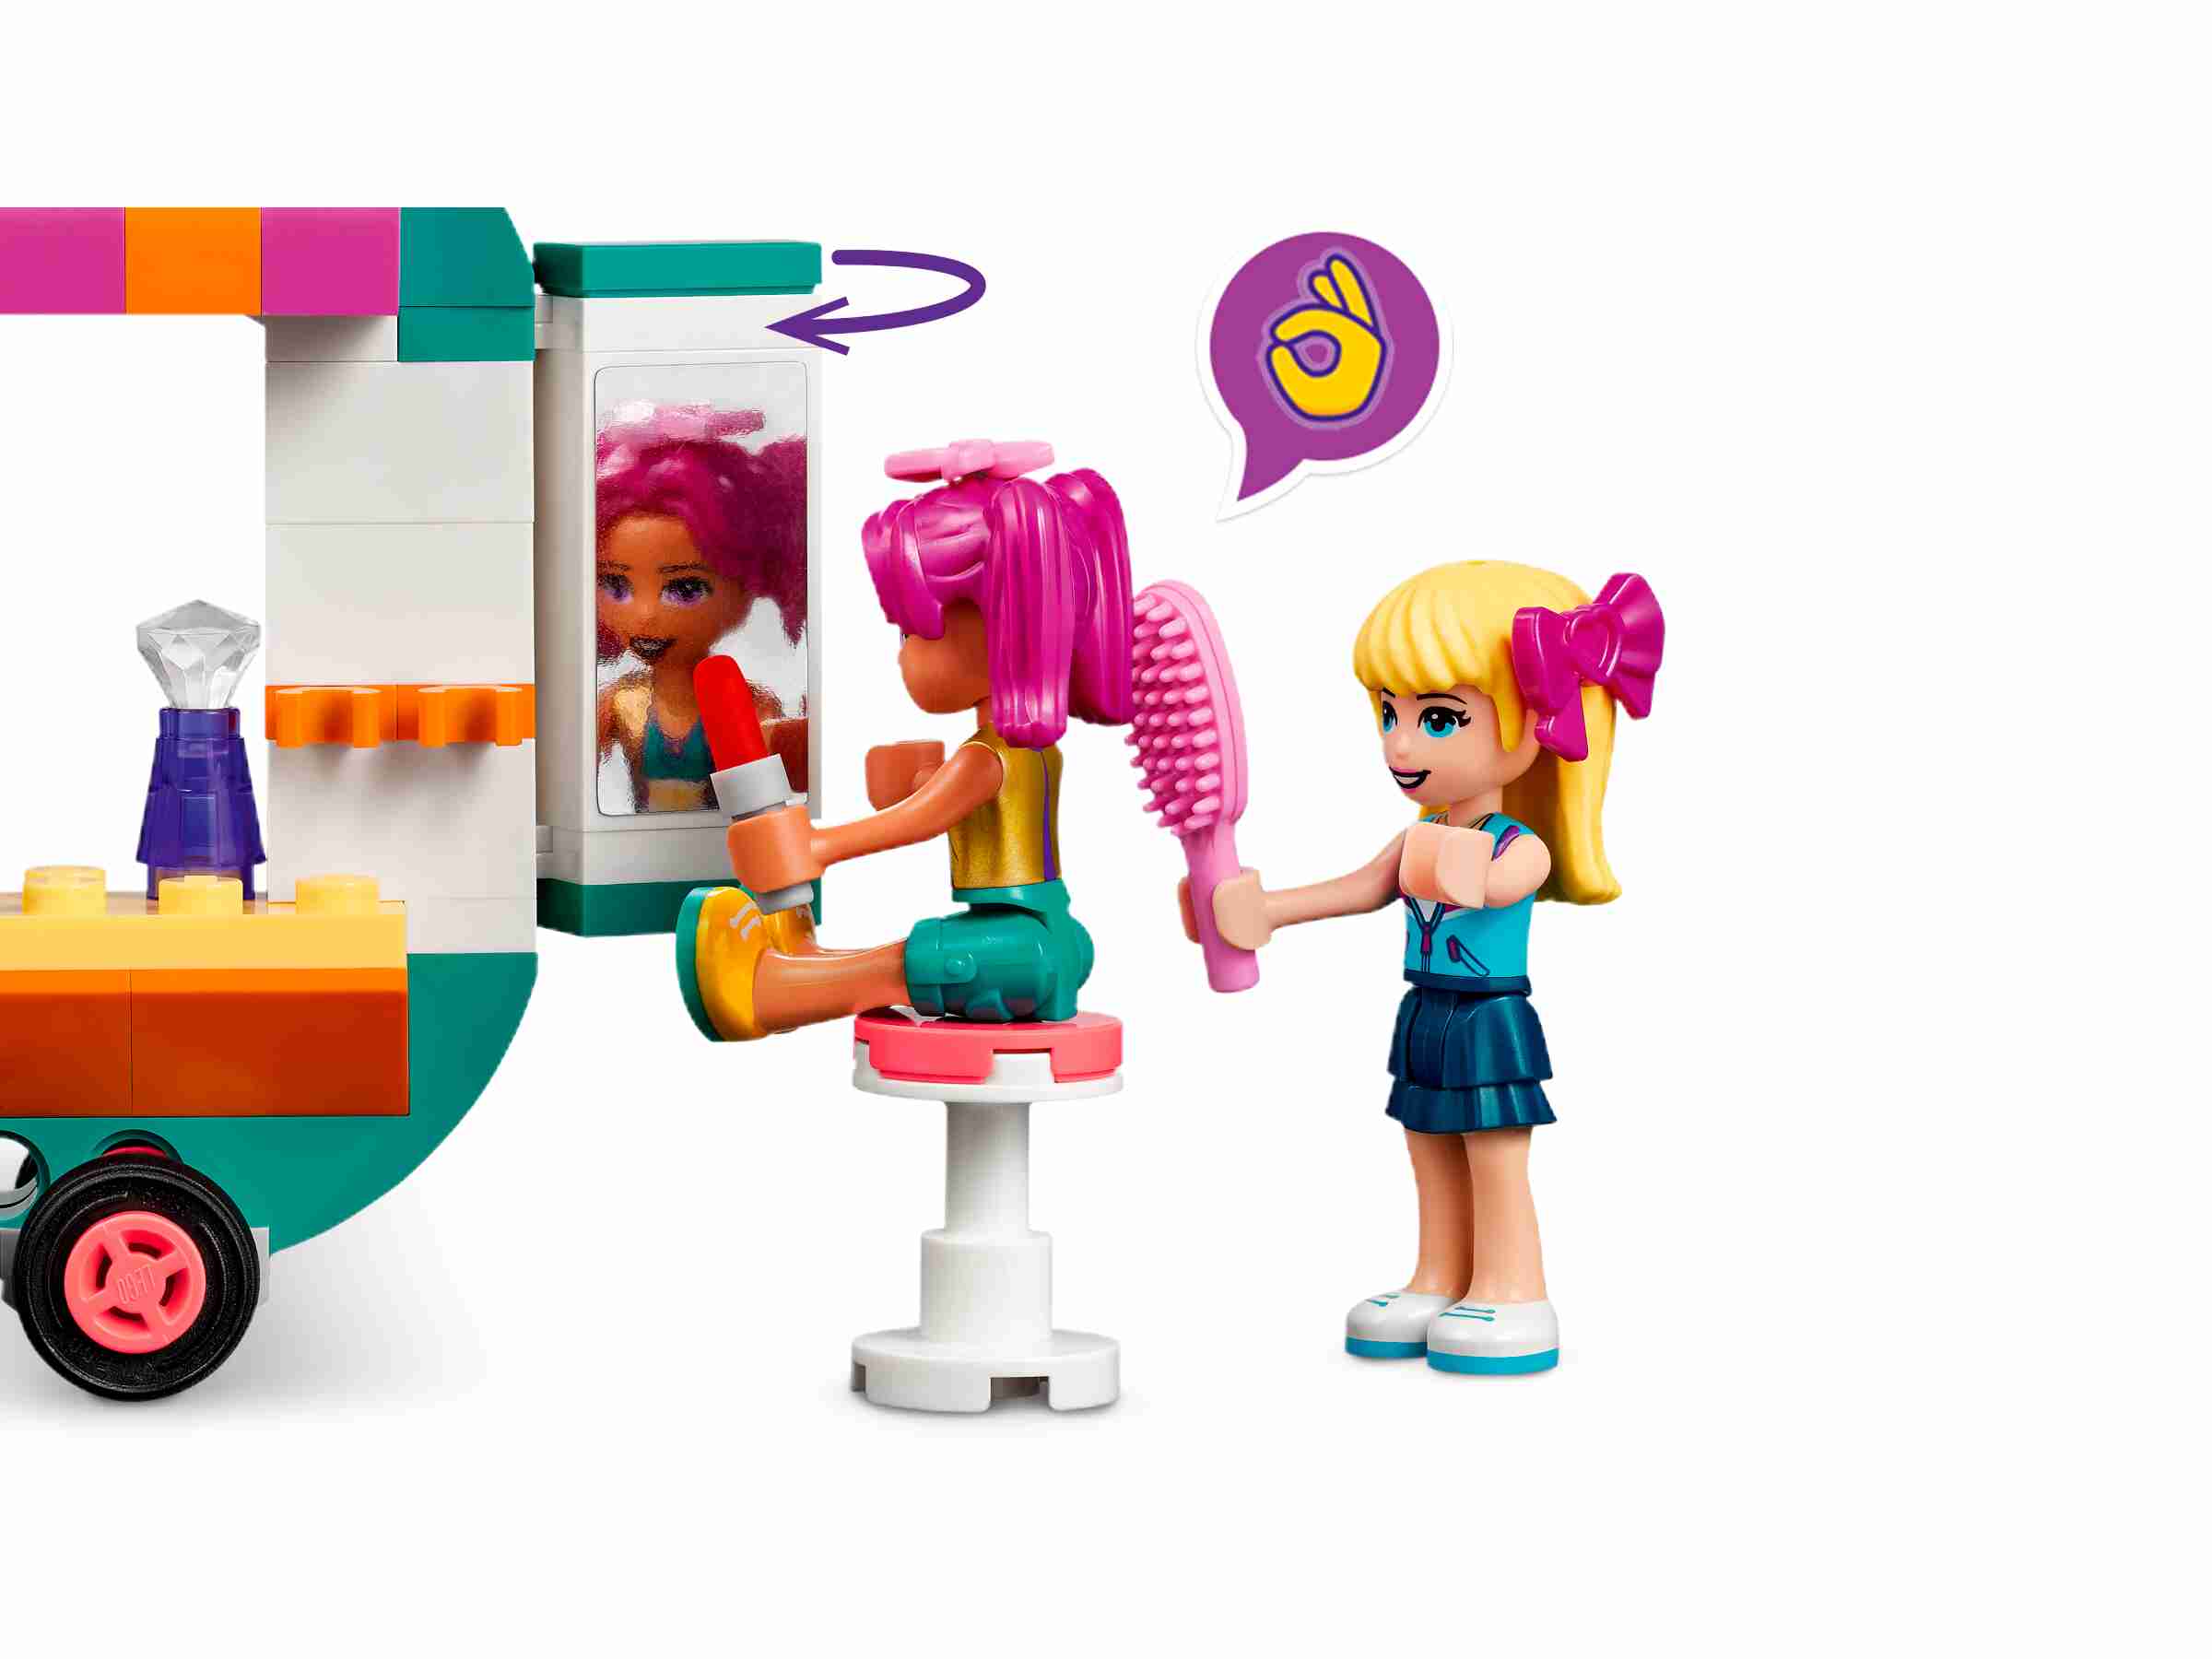 LEGO 41719 Friends Mobile Modeboutique mit Stephanie und Camila